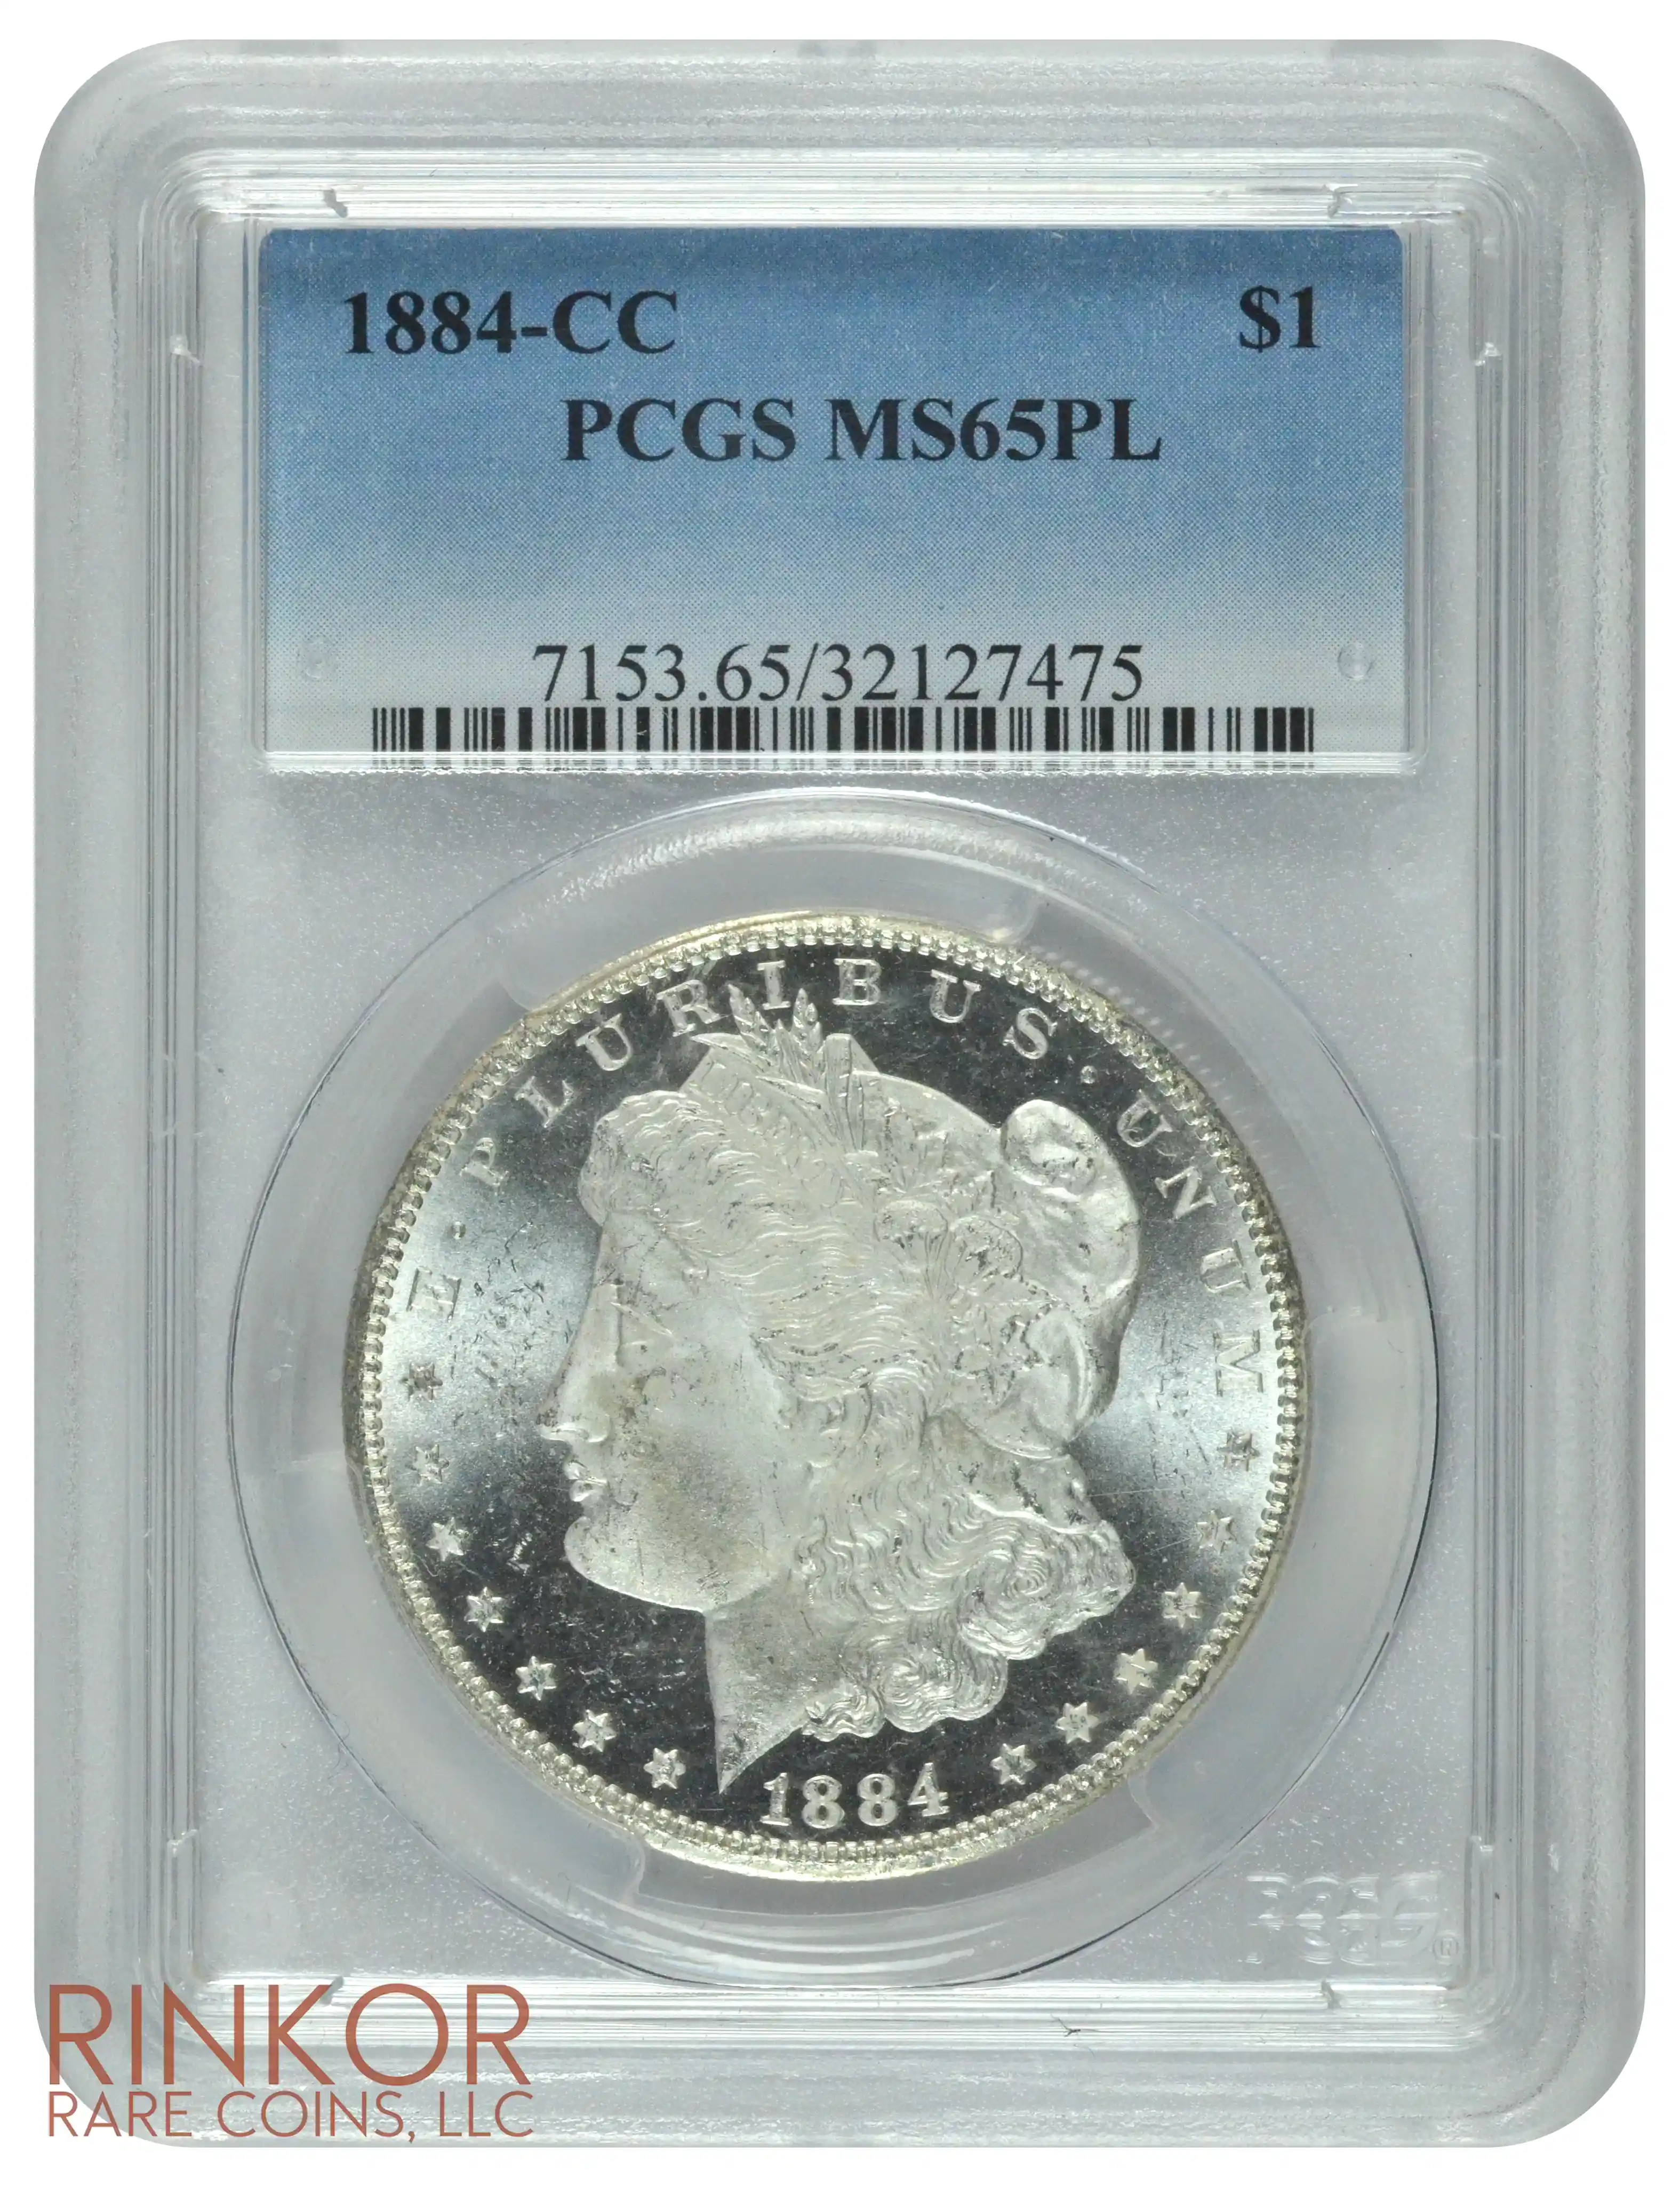 1884-CC $1 PCGS MS 65 PL